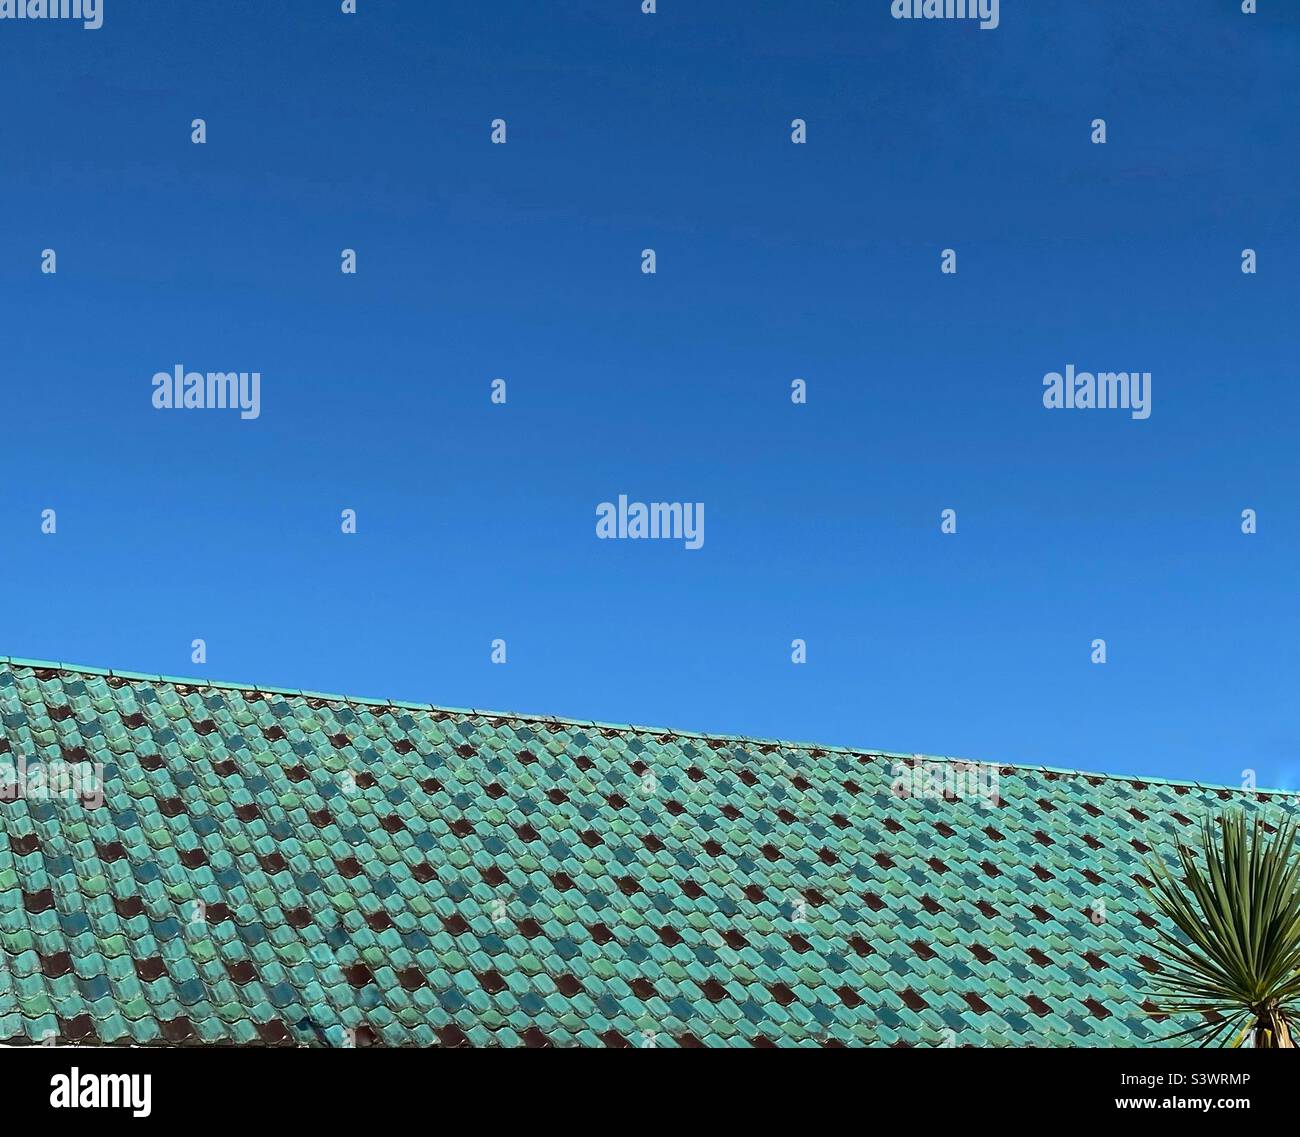 Una fotografia di un tetto di tegole verde turchese smaltato, cielo blu e una palma in un angolo. Vacanze estive casa sentire con spazio copia Foto Stock